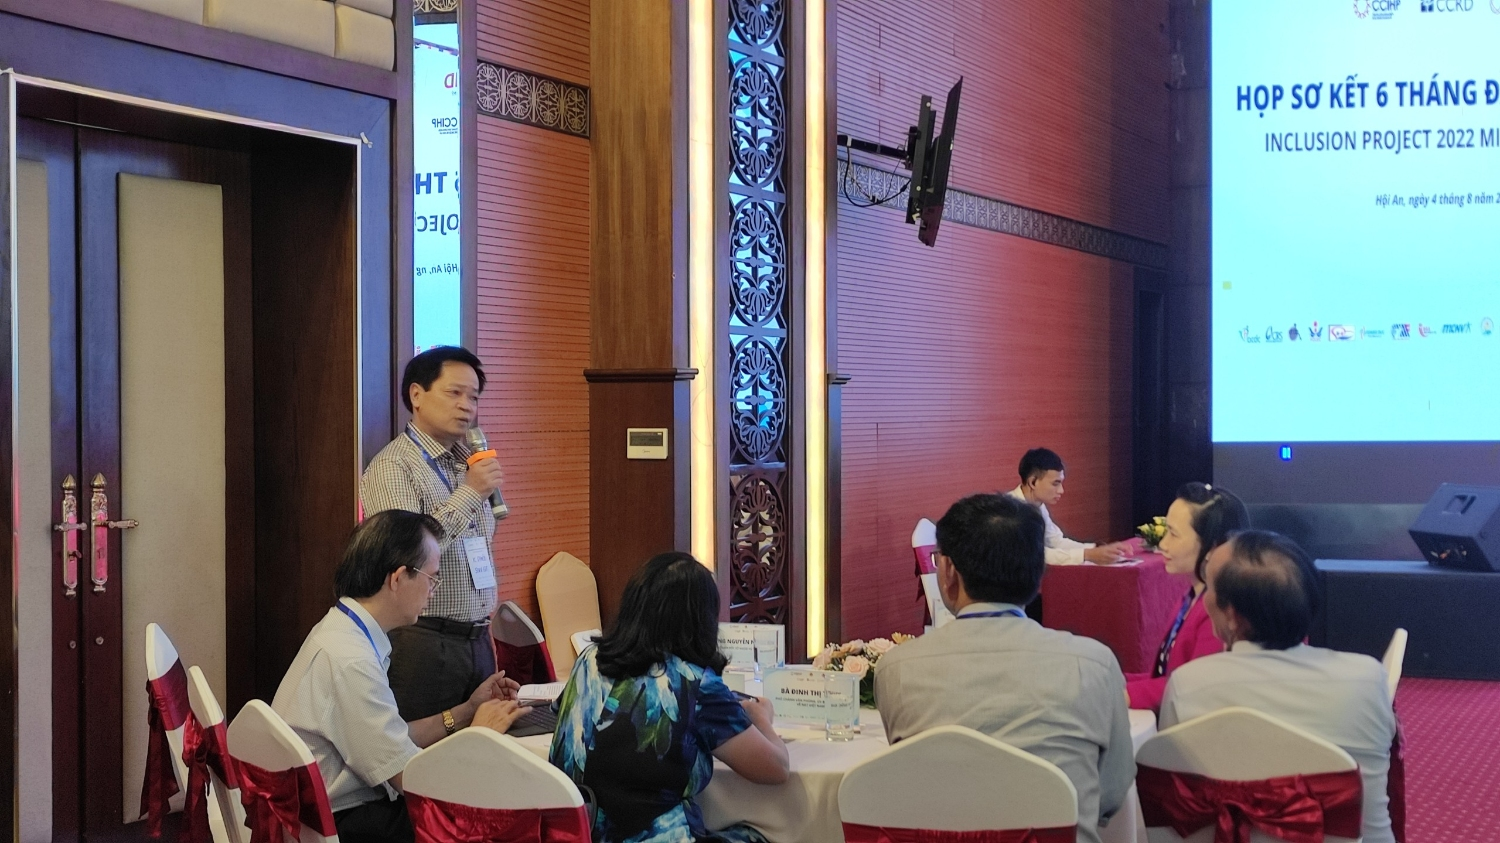 Họp sơ kết và chia sẻ kinh nghiệm dự án Hòa nhập ngày 4-5/8/2022 tại tỉnh Quảng Nam